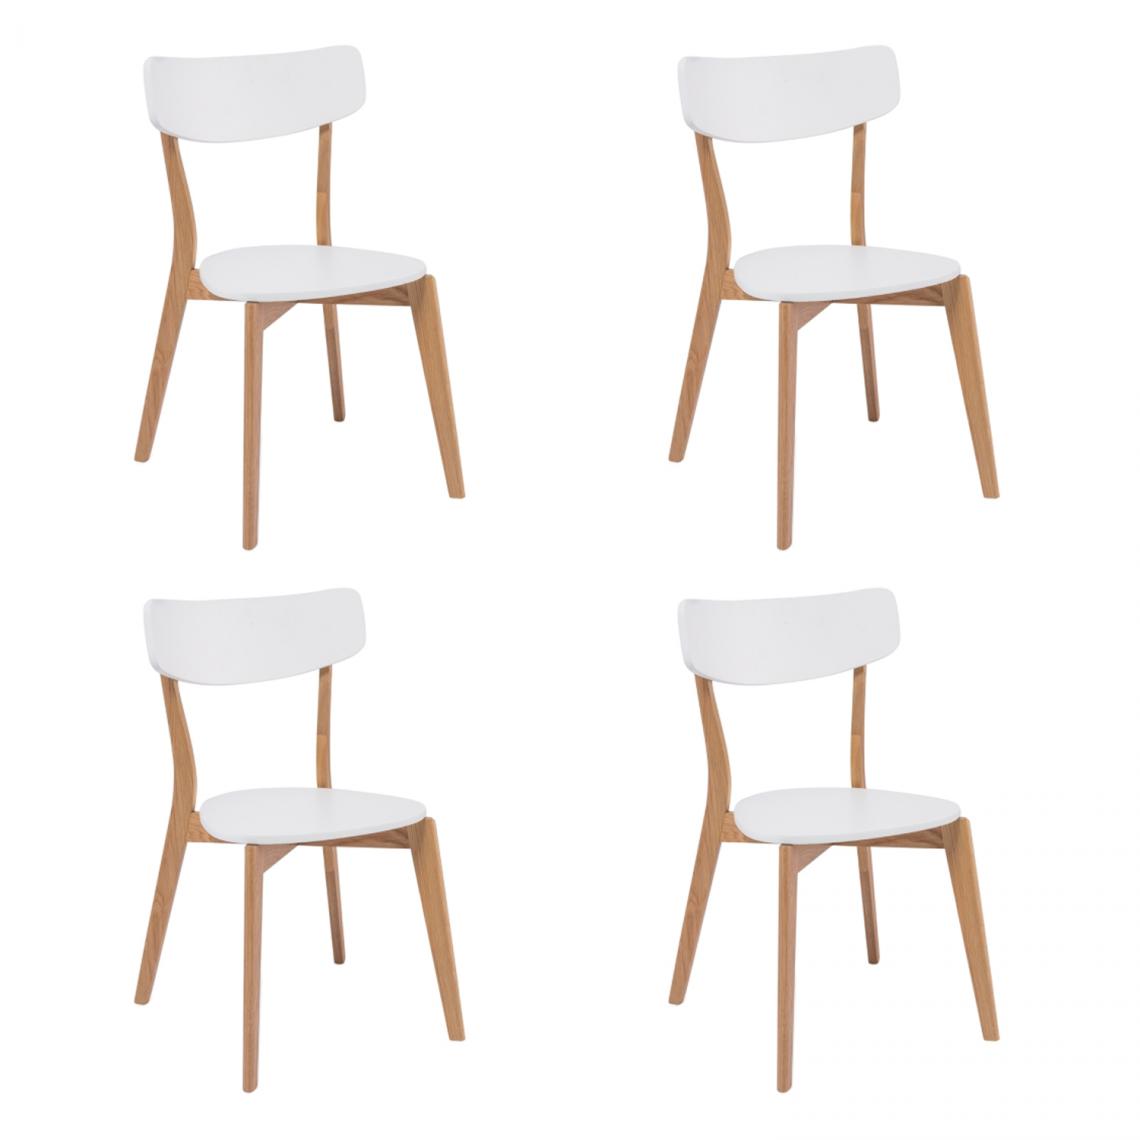 Hucoco - MOSSA - Lot de 4 chaises modernes - Style scandinave - 78x41x44 cm - MDF + bois massif - Blanc - Chaises